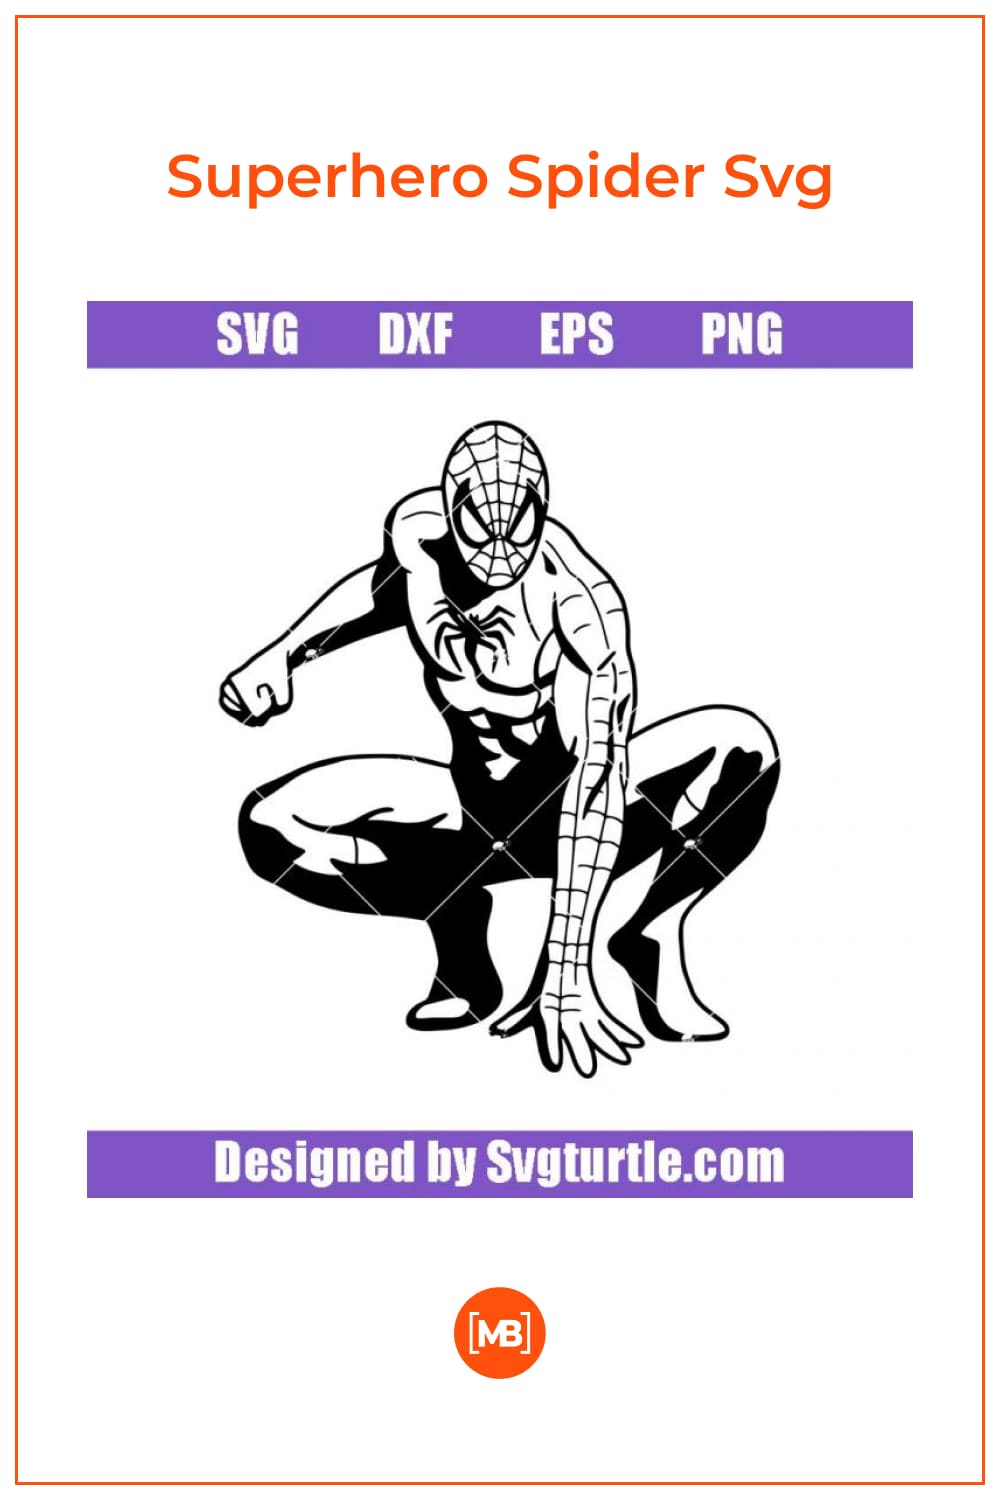 Superhero Spider Svg.